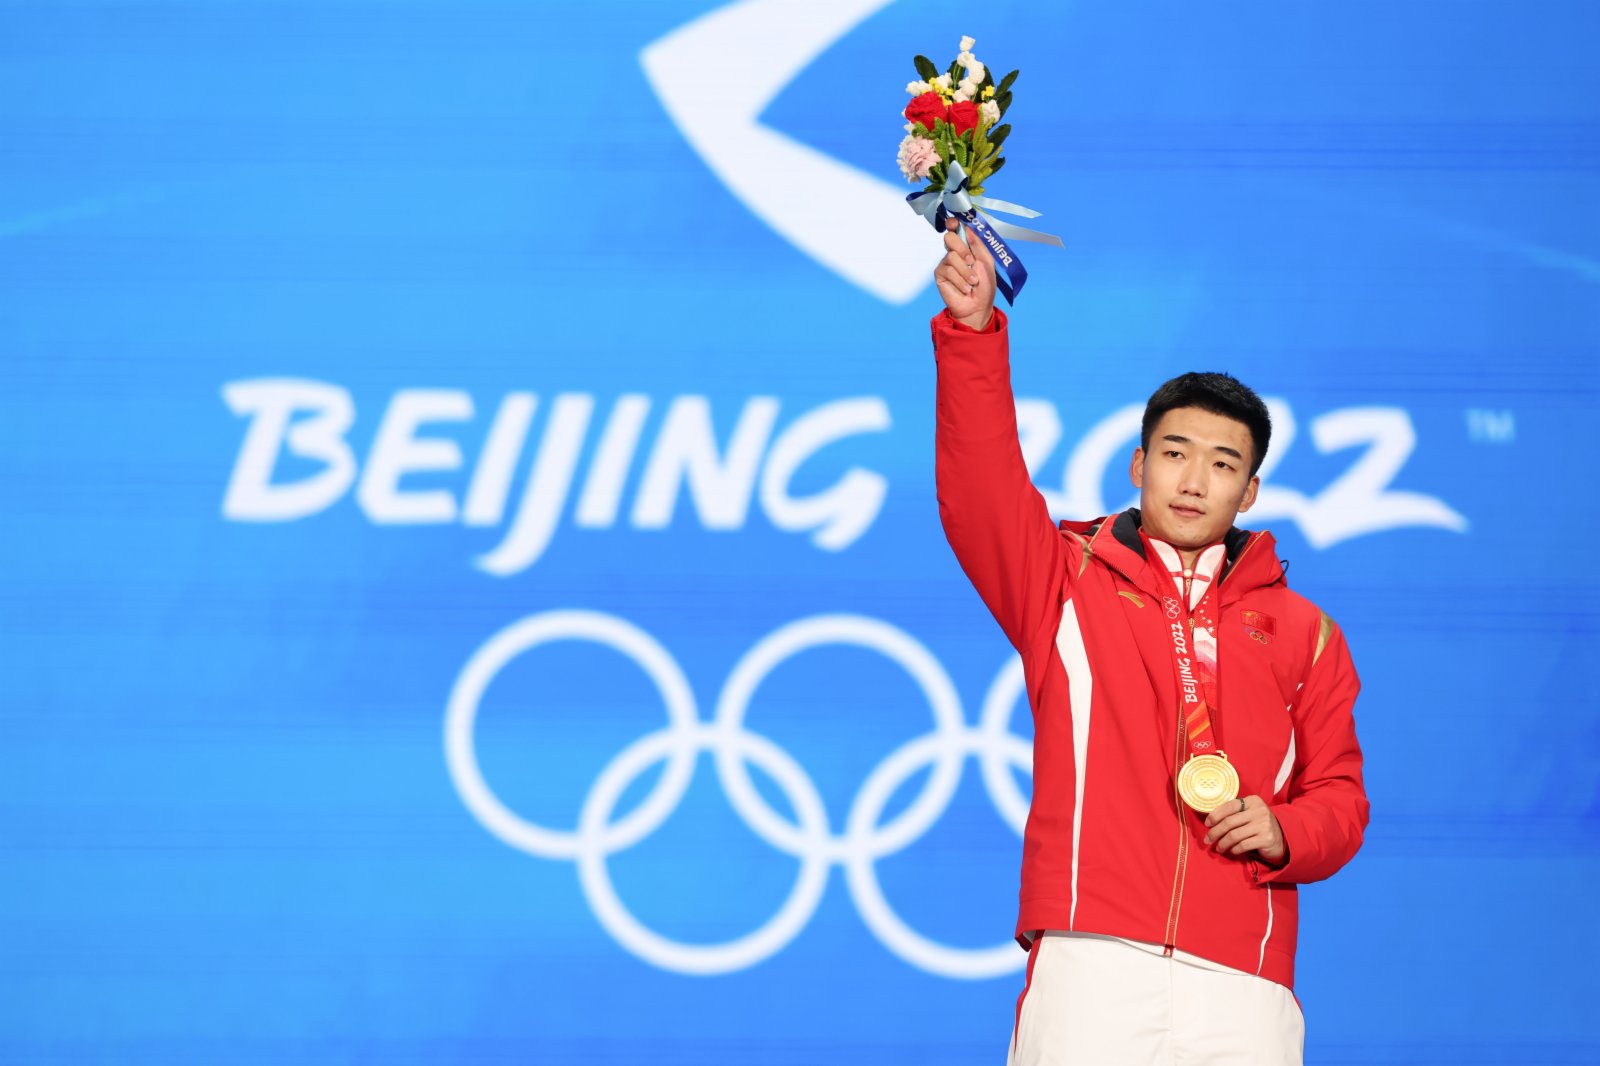 冠軍高亭宇在獎牌頒發儀式上。